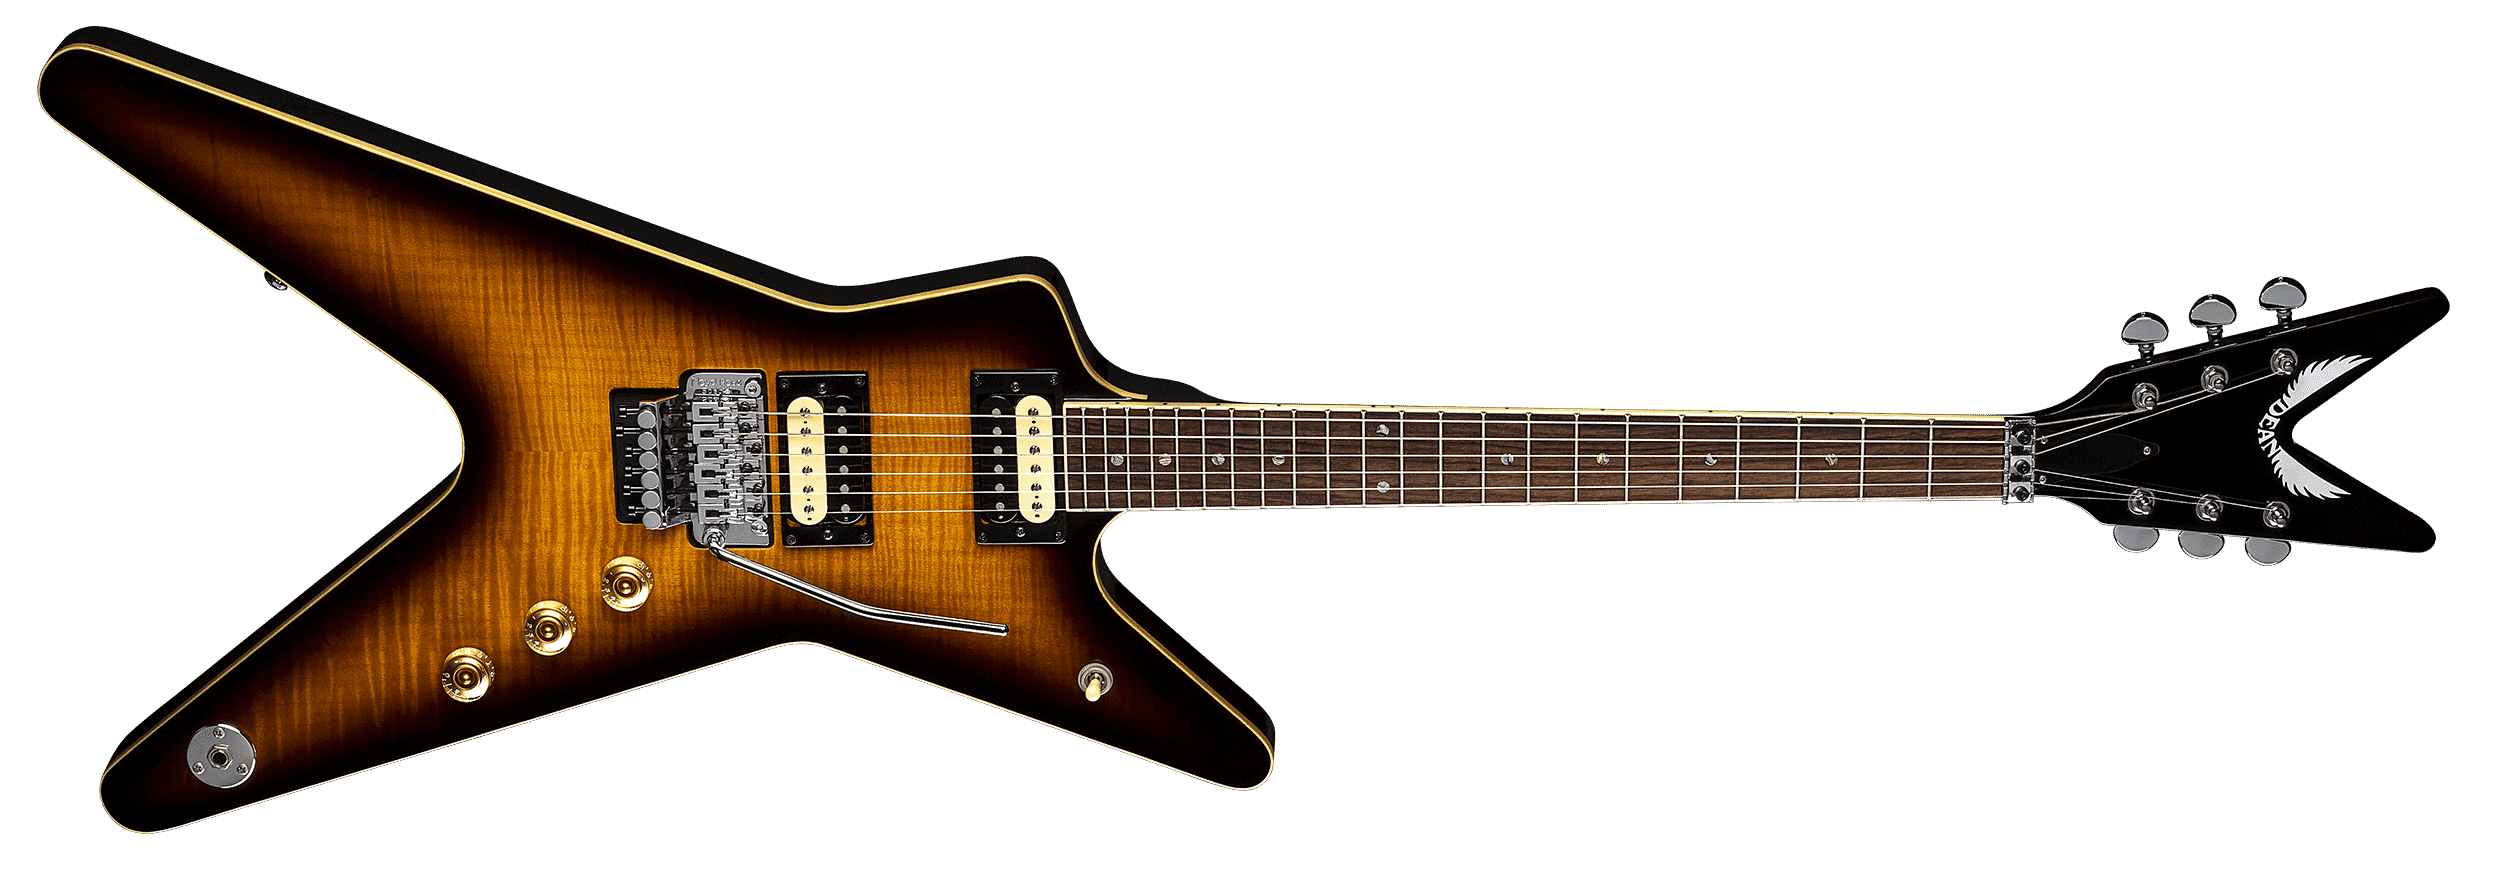 Dean Dean Guitars ML 79 Floyd Flame Haut Trans Brazilian Guitare Électrique 